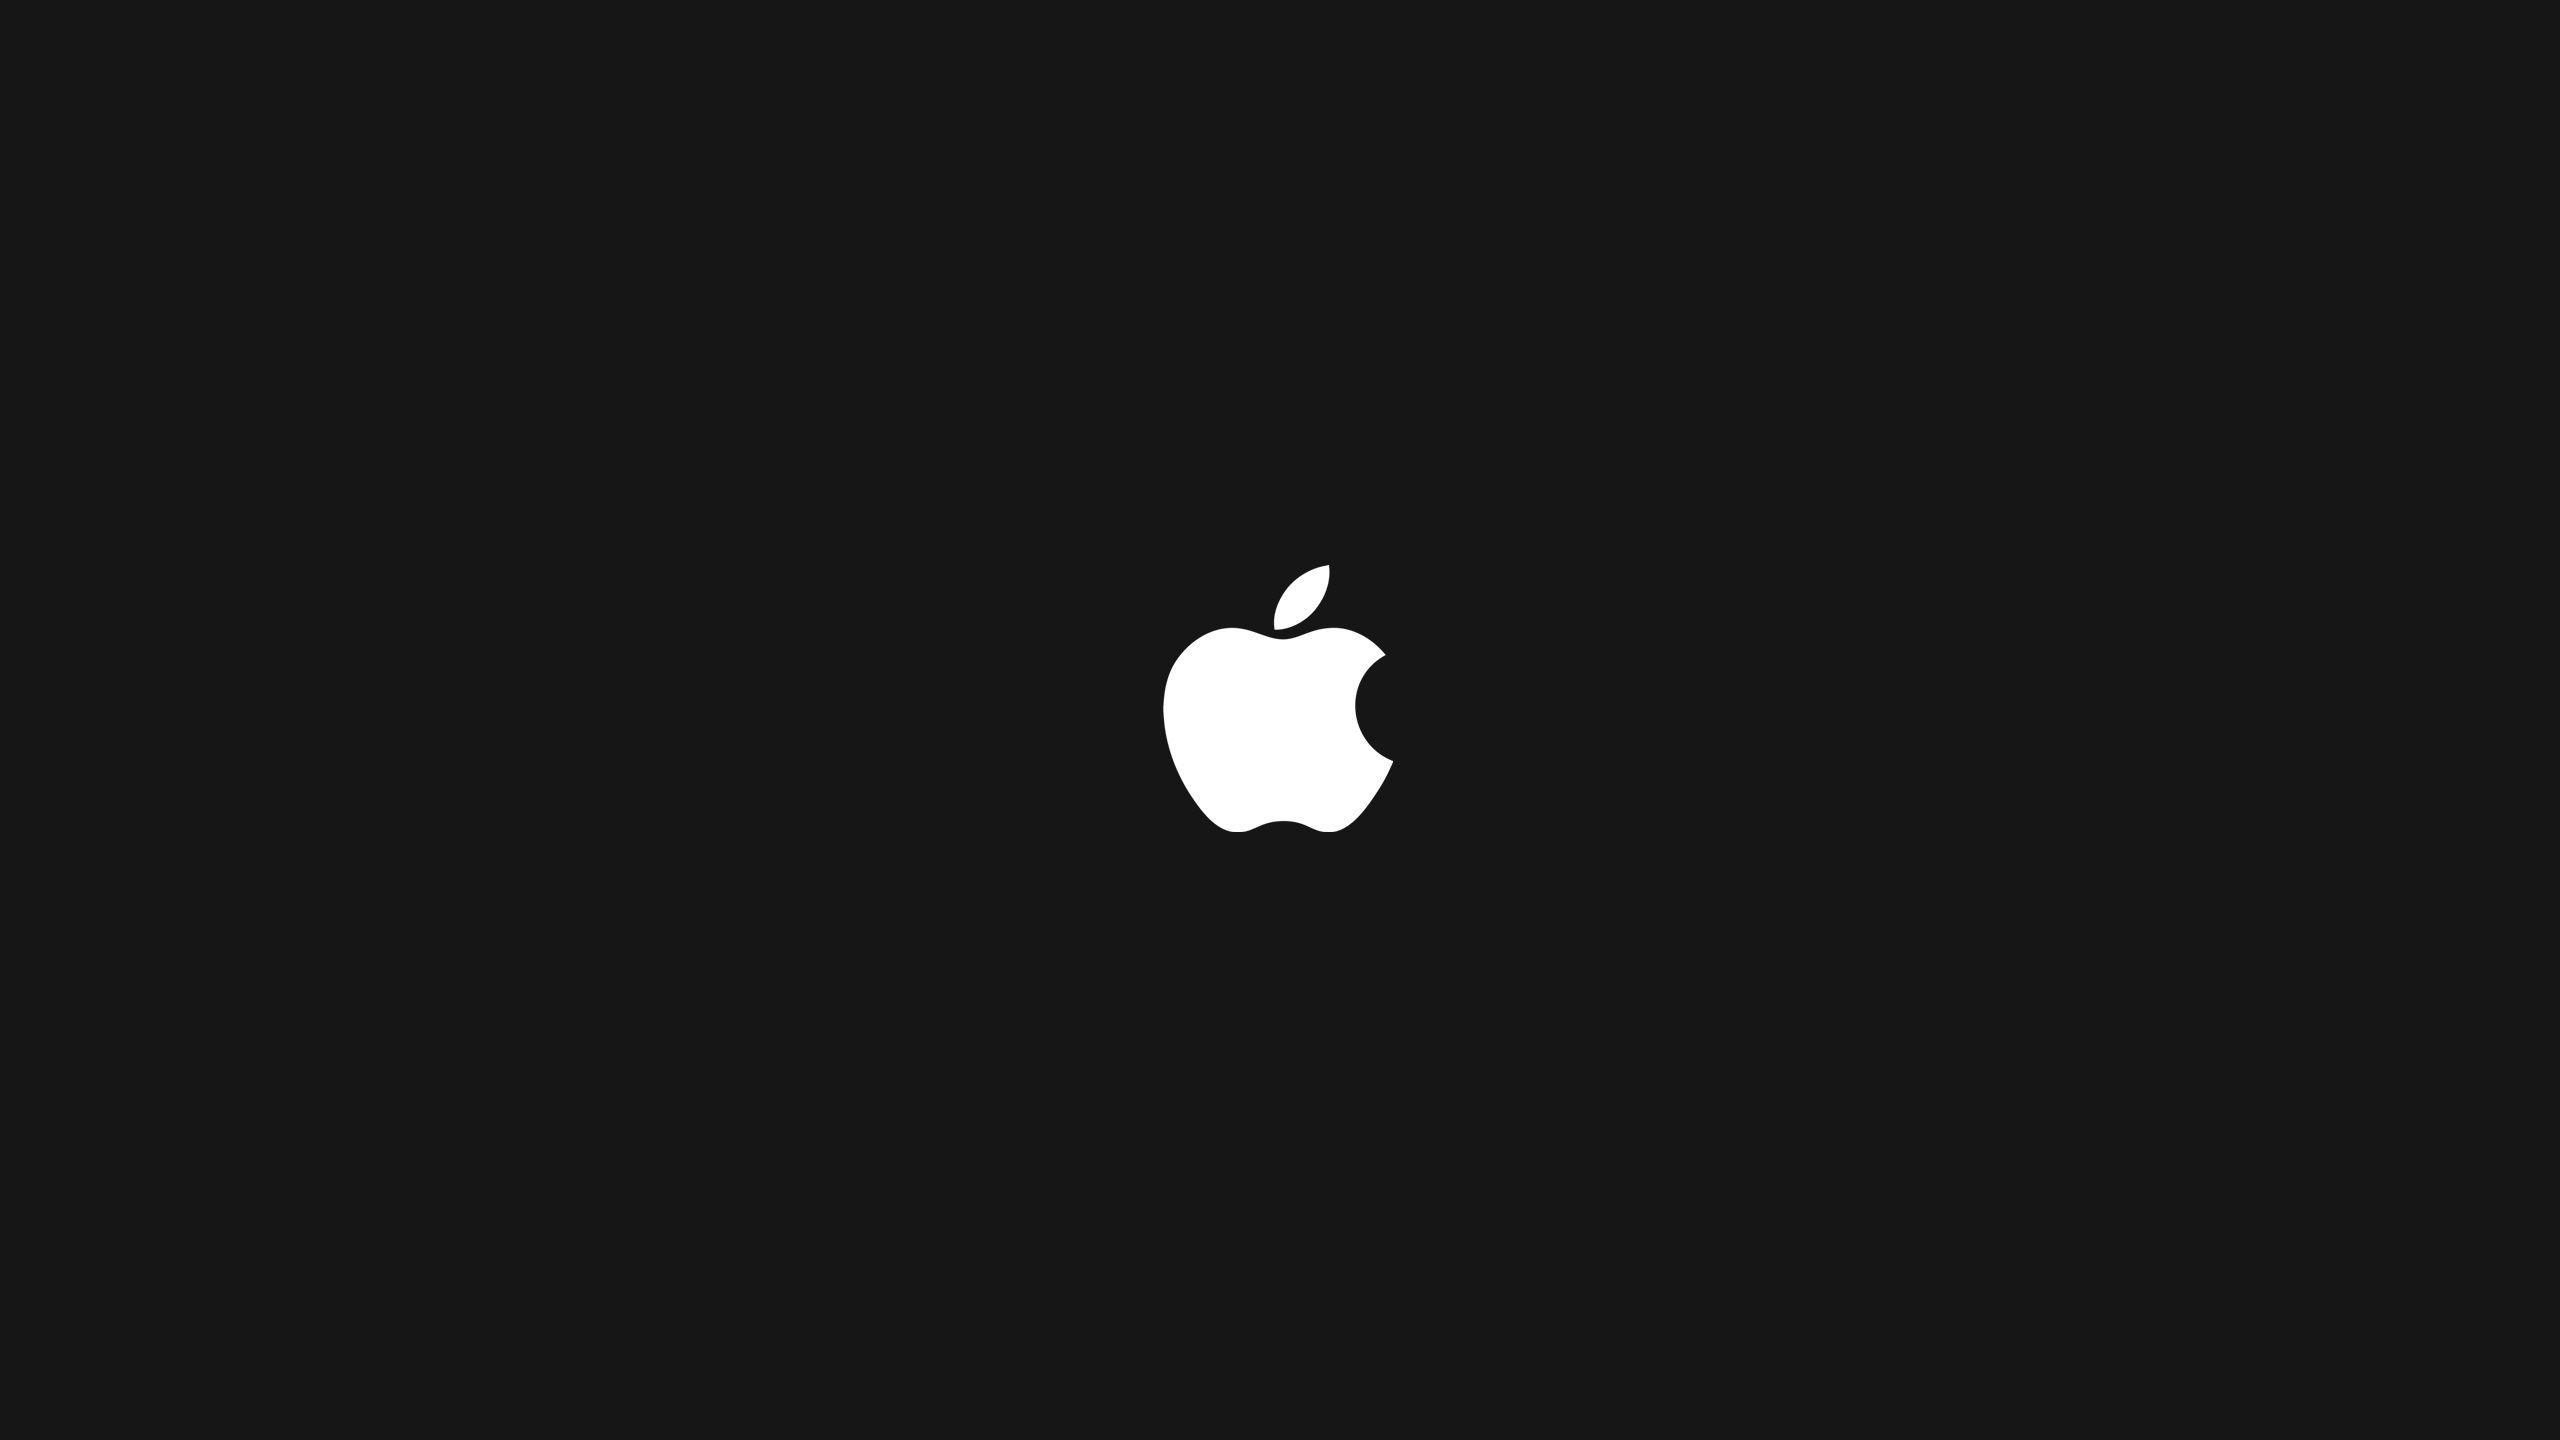 mac apple logo minimalism black background green HD wallpaper. ipad